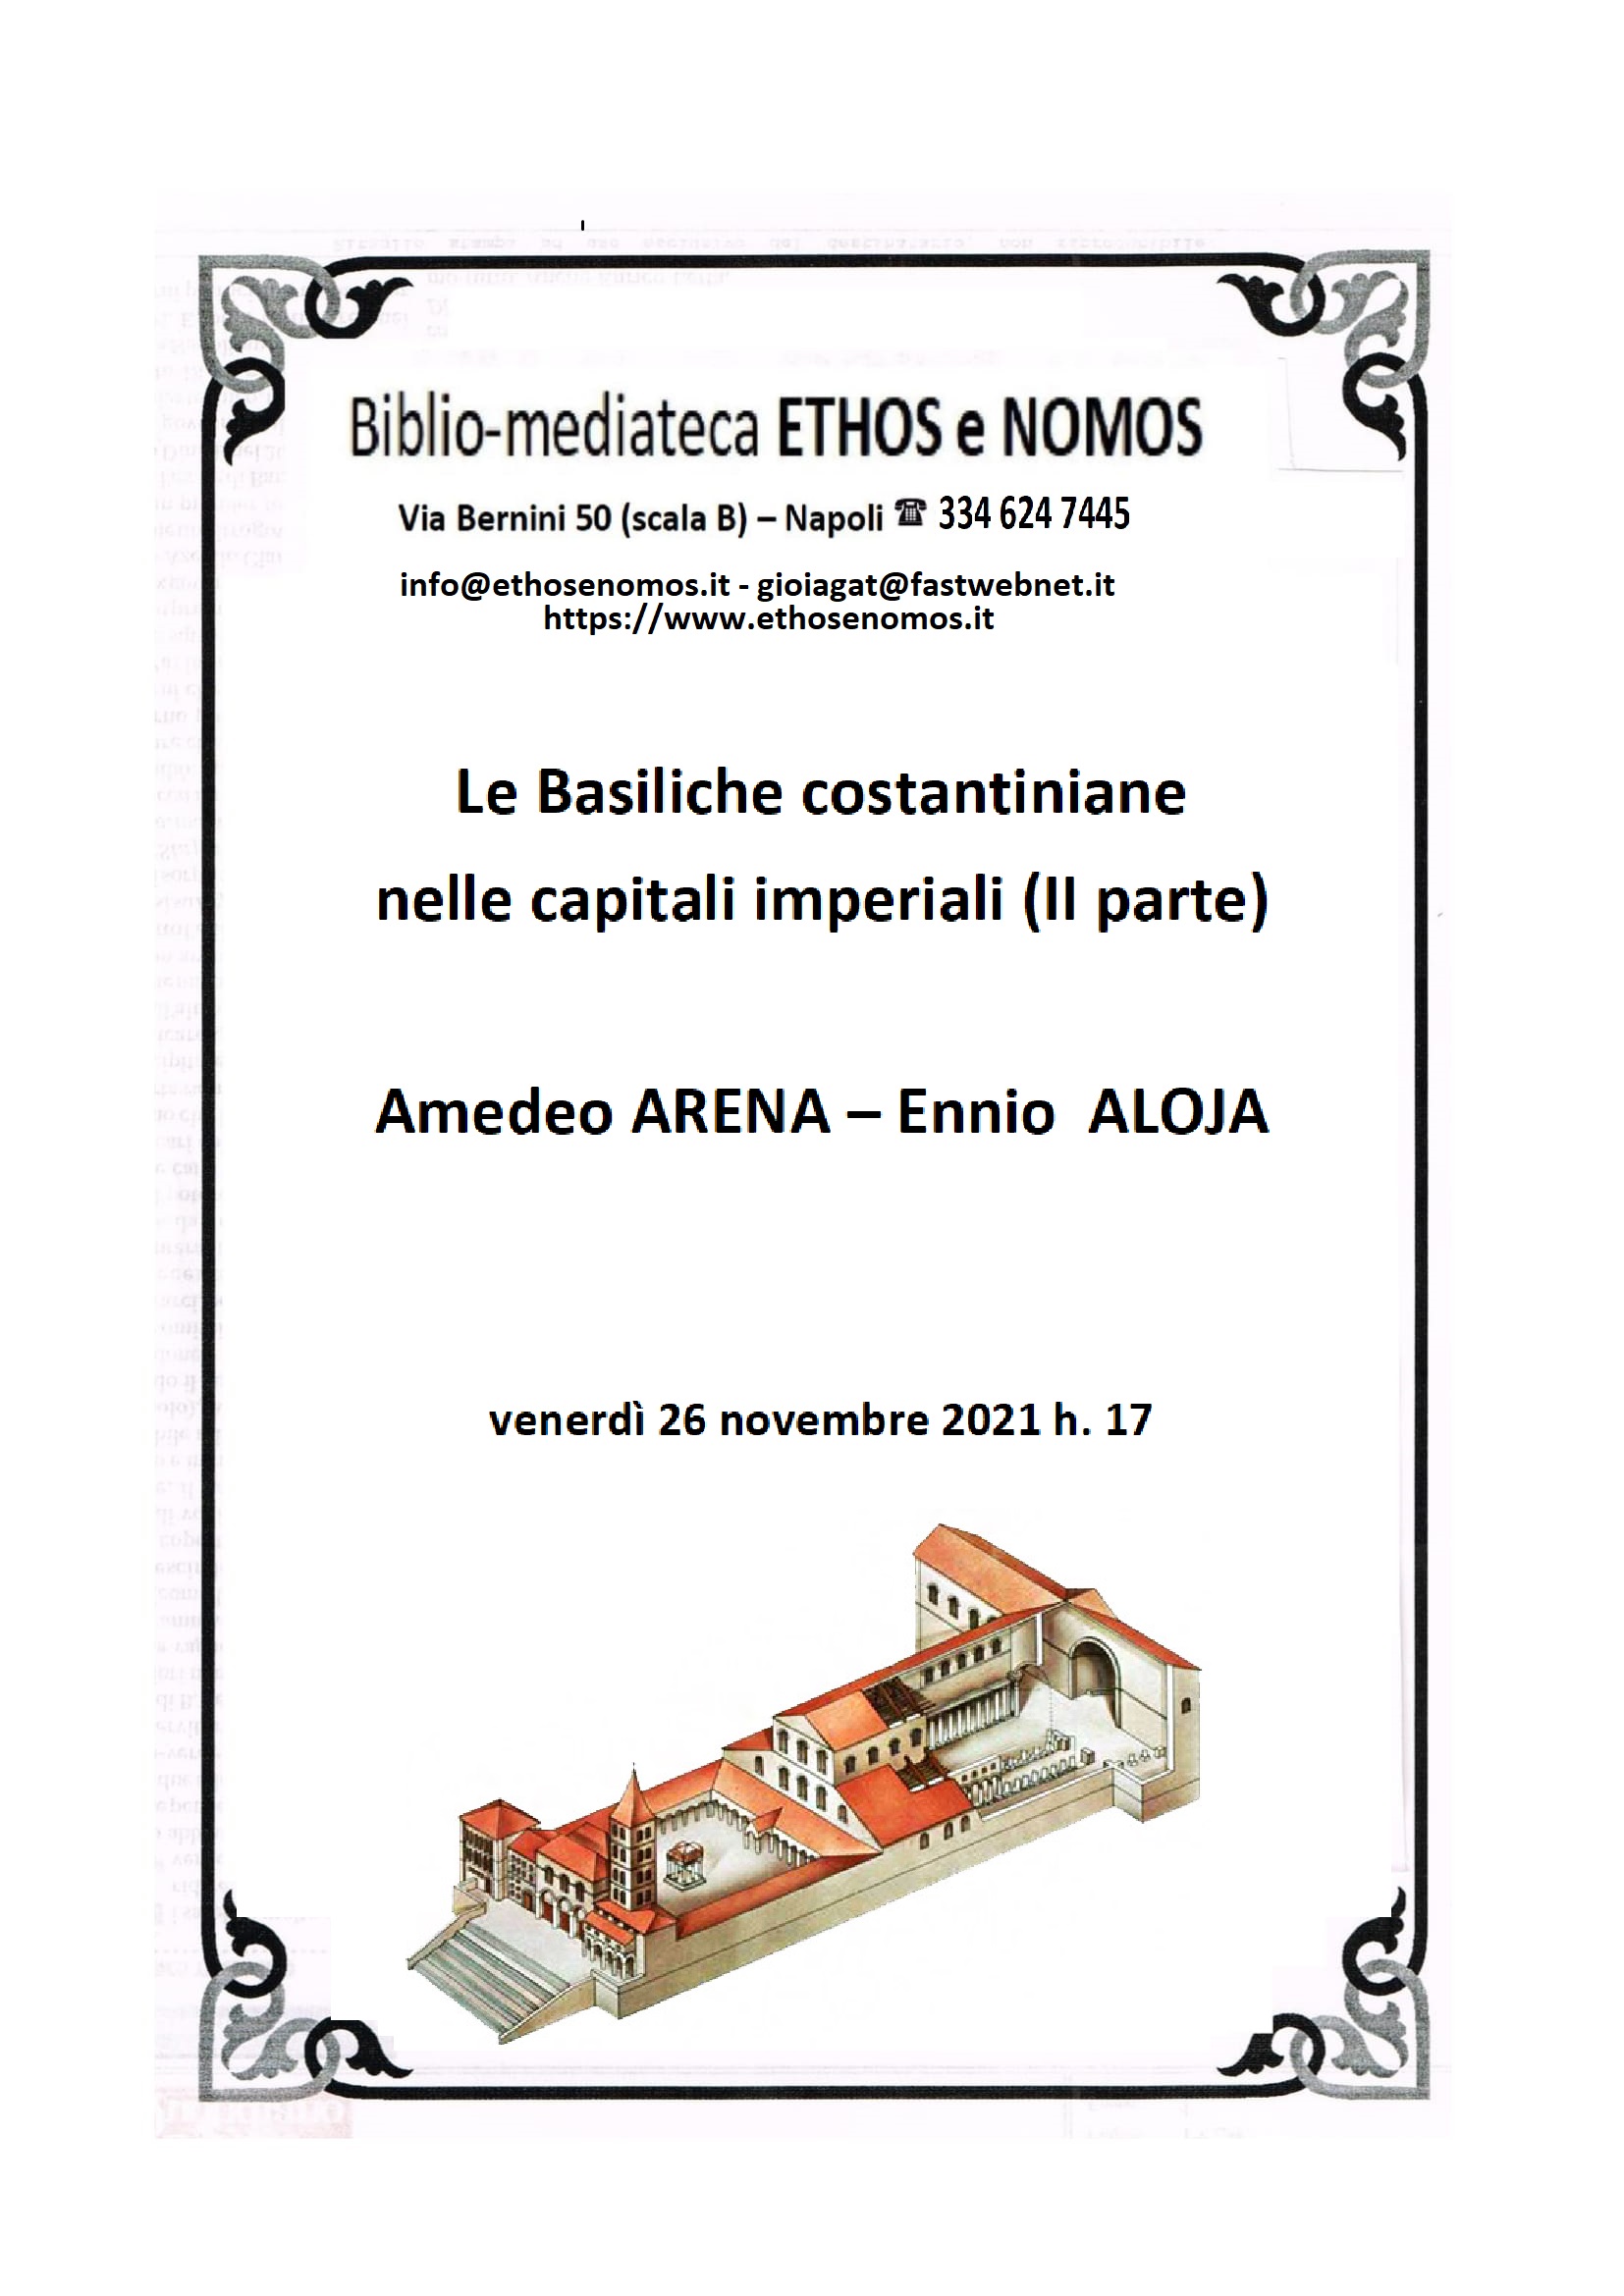 AMEDEO ARENA - ENNIO ALOJA : Le basiliche costantiniane nelle capitali imperiali (2a parte)